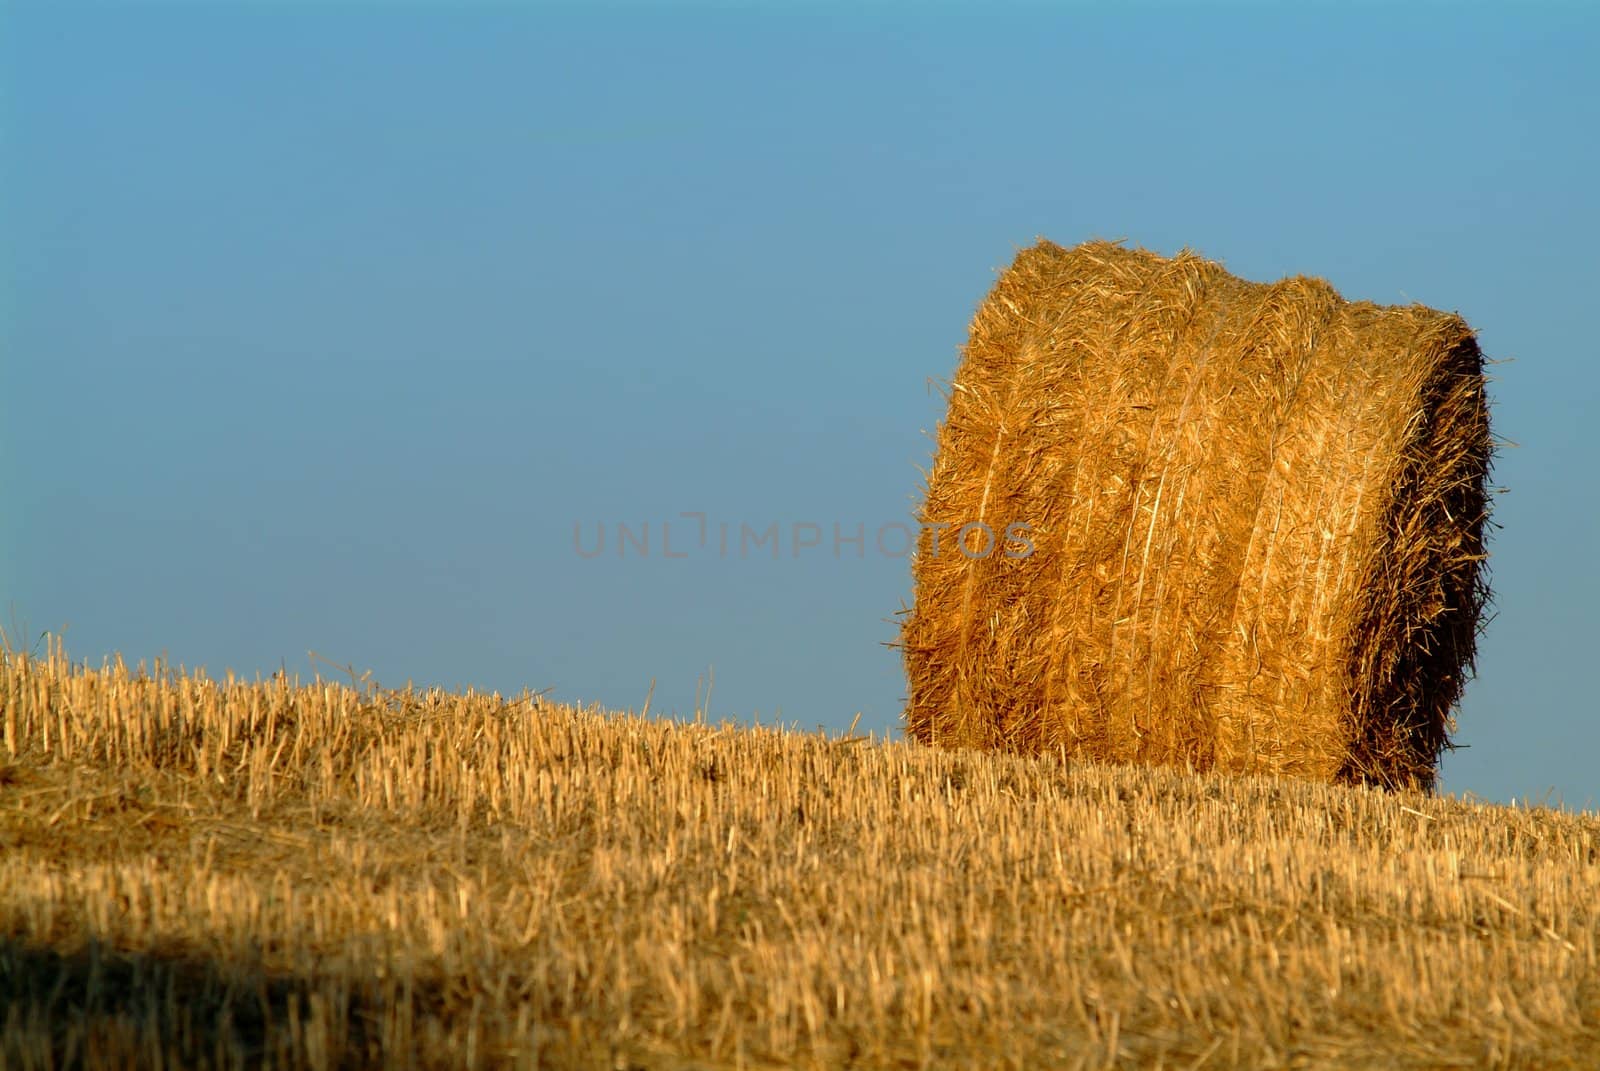 strohballen | straw bale by fotofritz